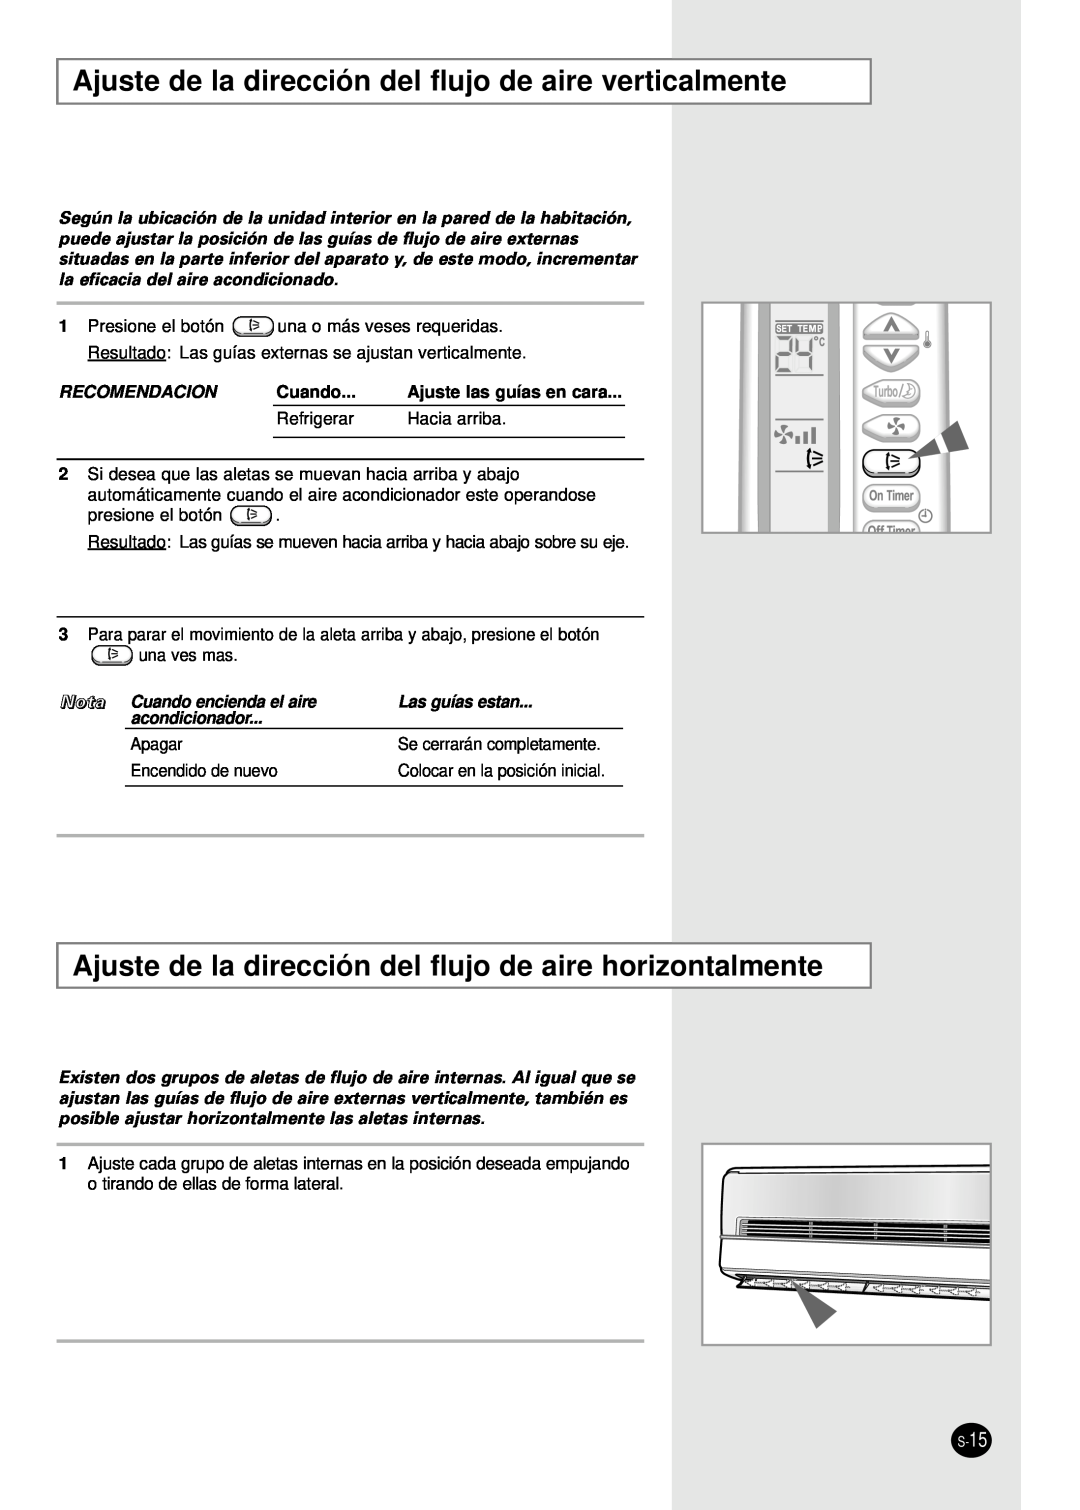 Samsung AS12SGGB manual Recomendacion, Ajuste las guías en cara, Refrigerar, Hacia arriba, Nota Cuando encienda el aire 